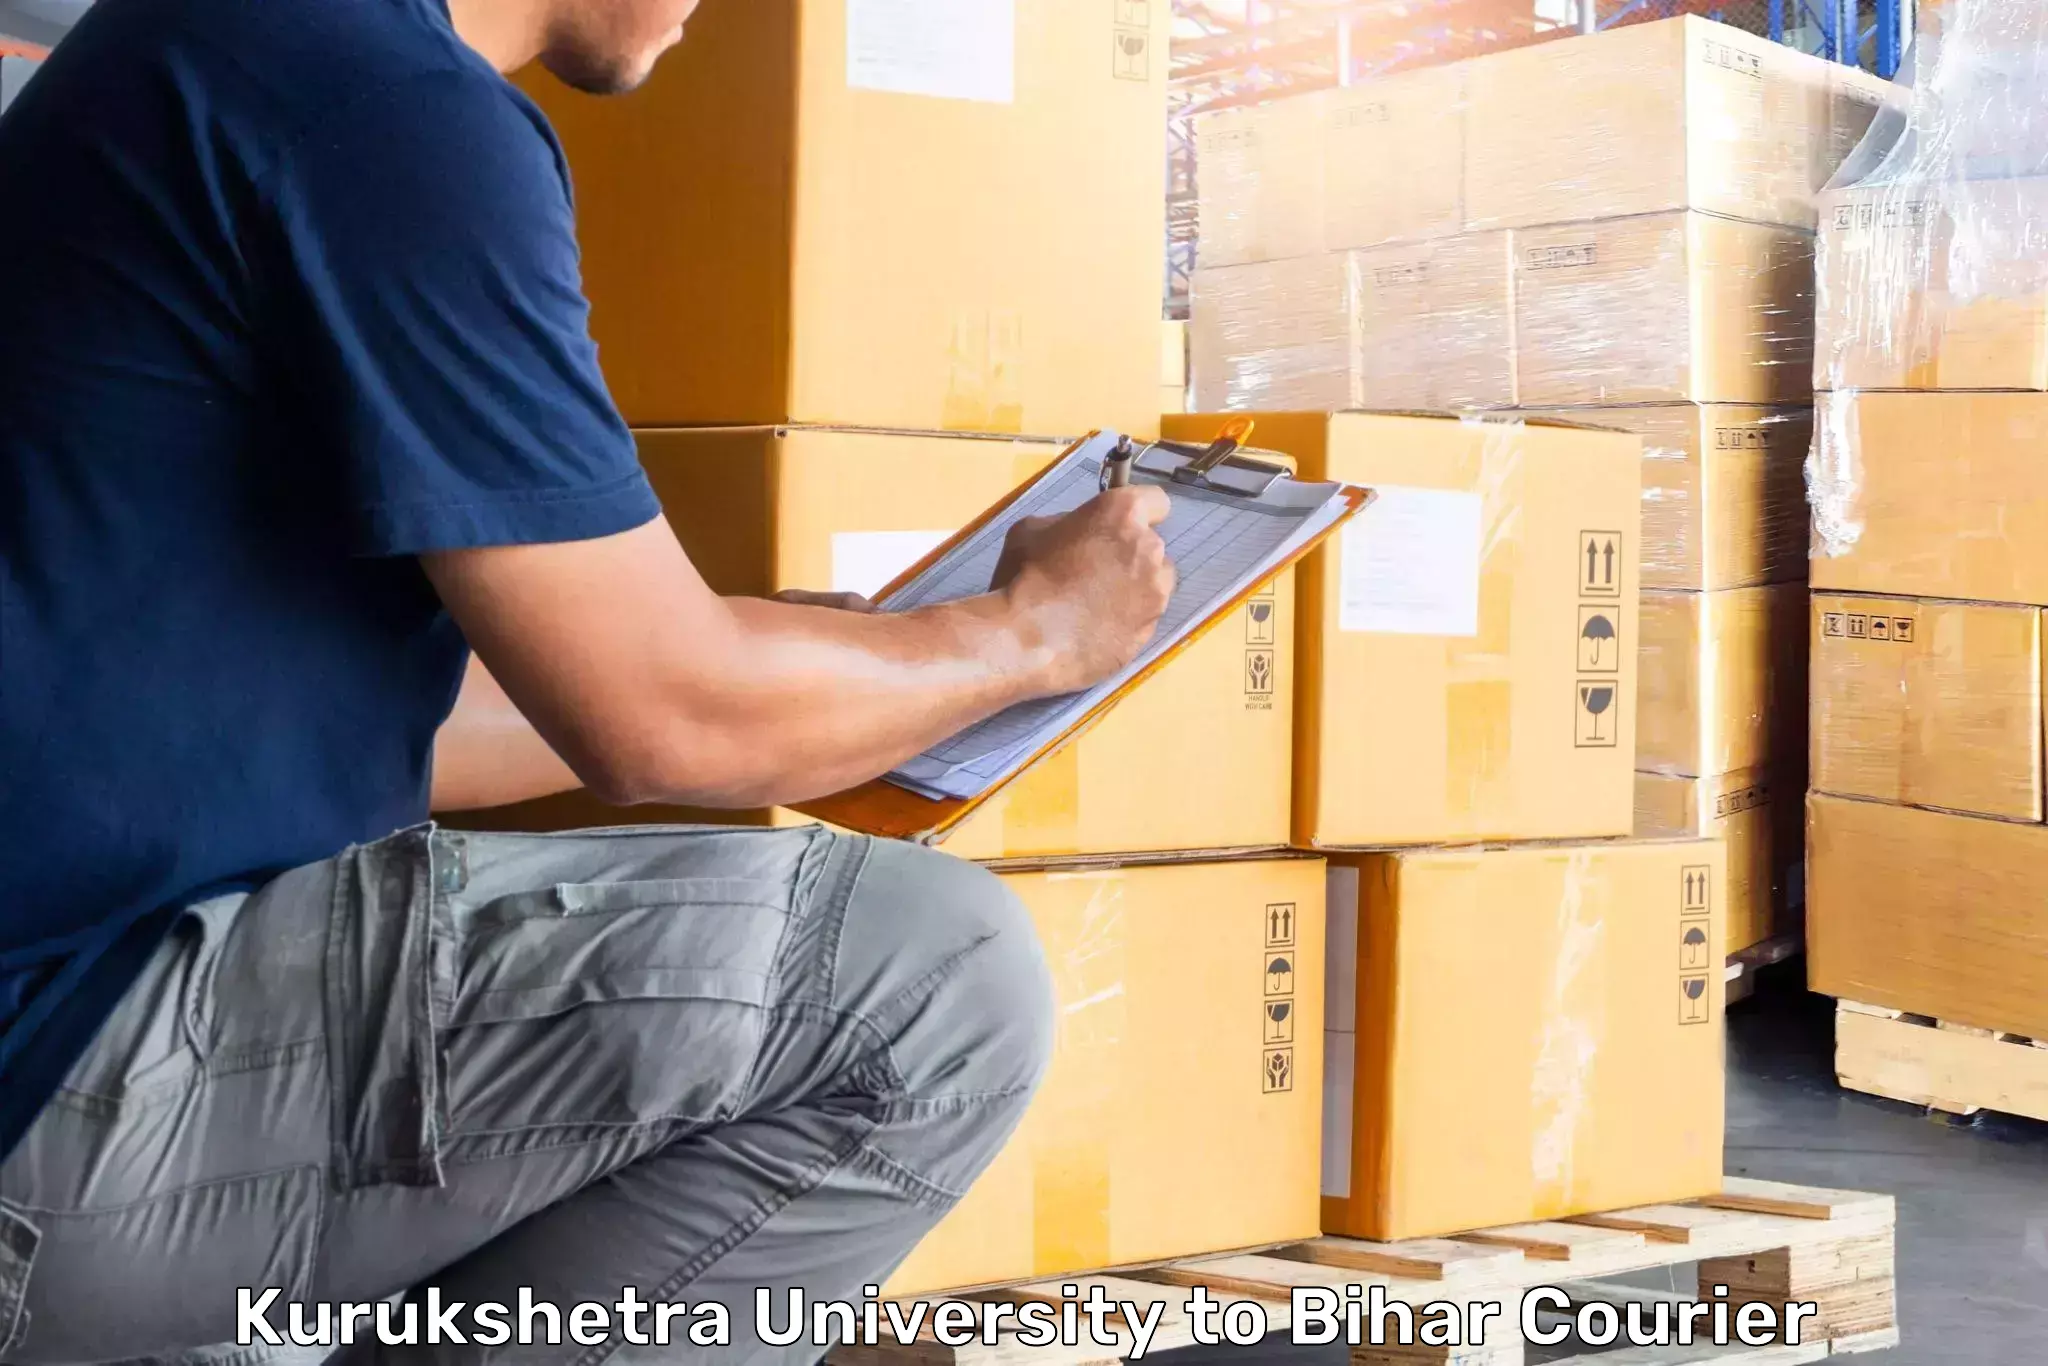 Luggage delivery app Kurukshetra University to Khodaganj